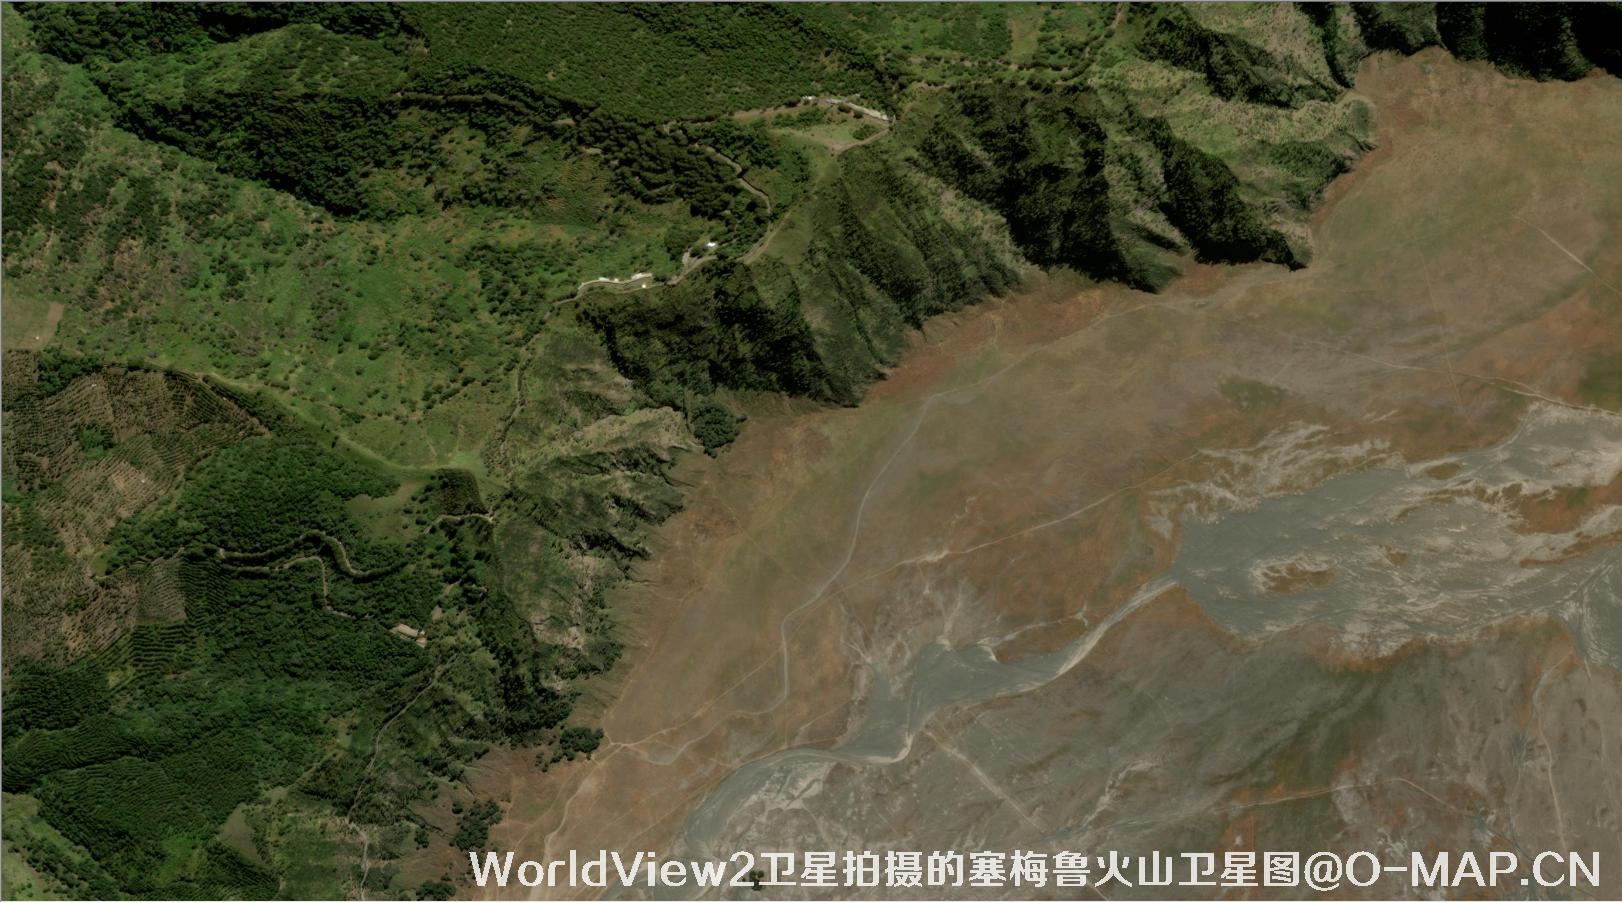  WorldView2卫星2019年拍摄的塞梅鲁火山卫星图